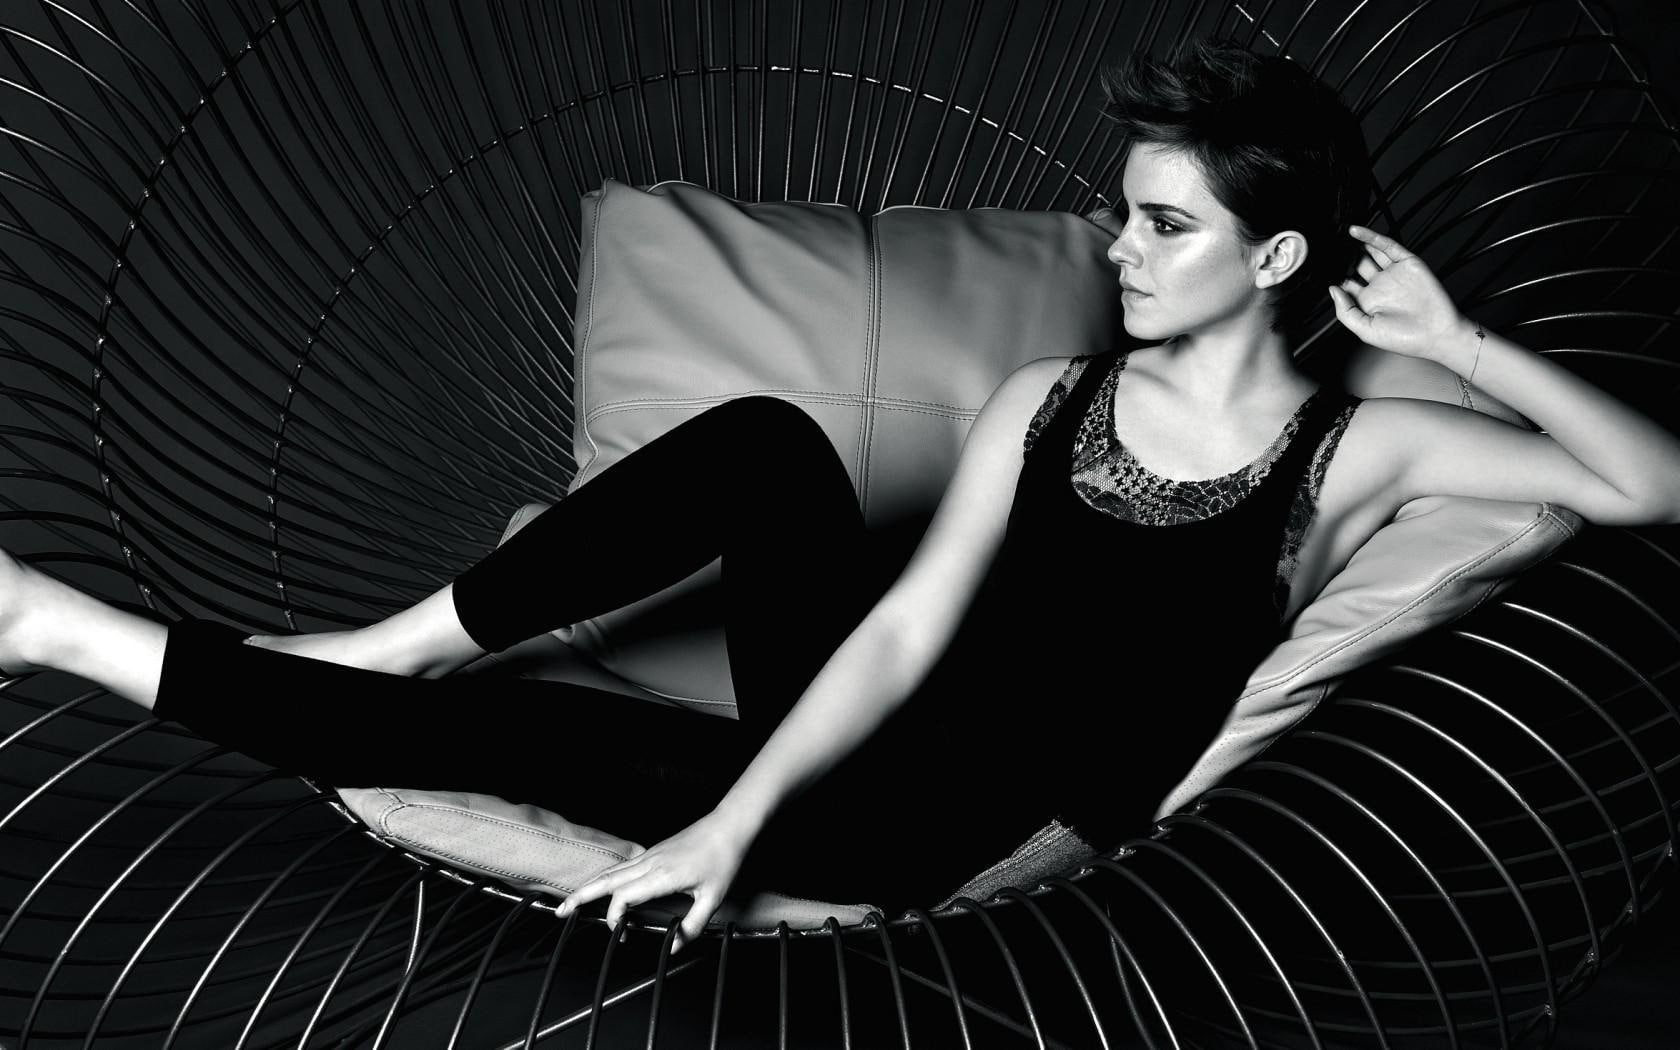 Beauty Emma Watson, women's black tank top with black pants, female celebrities